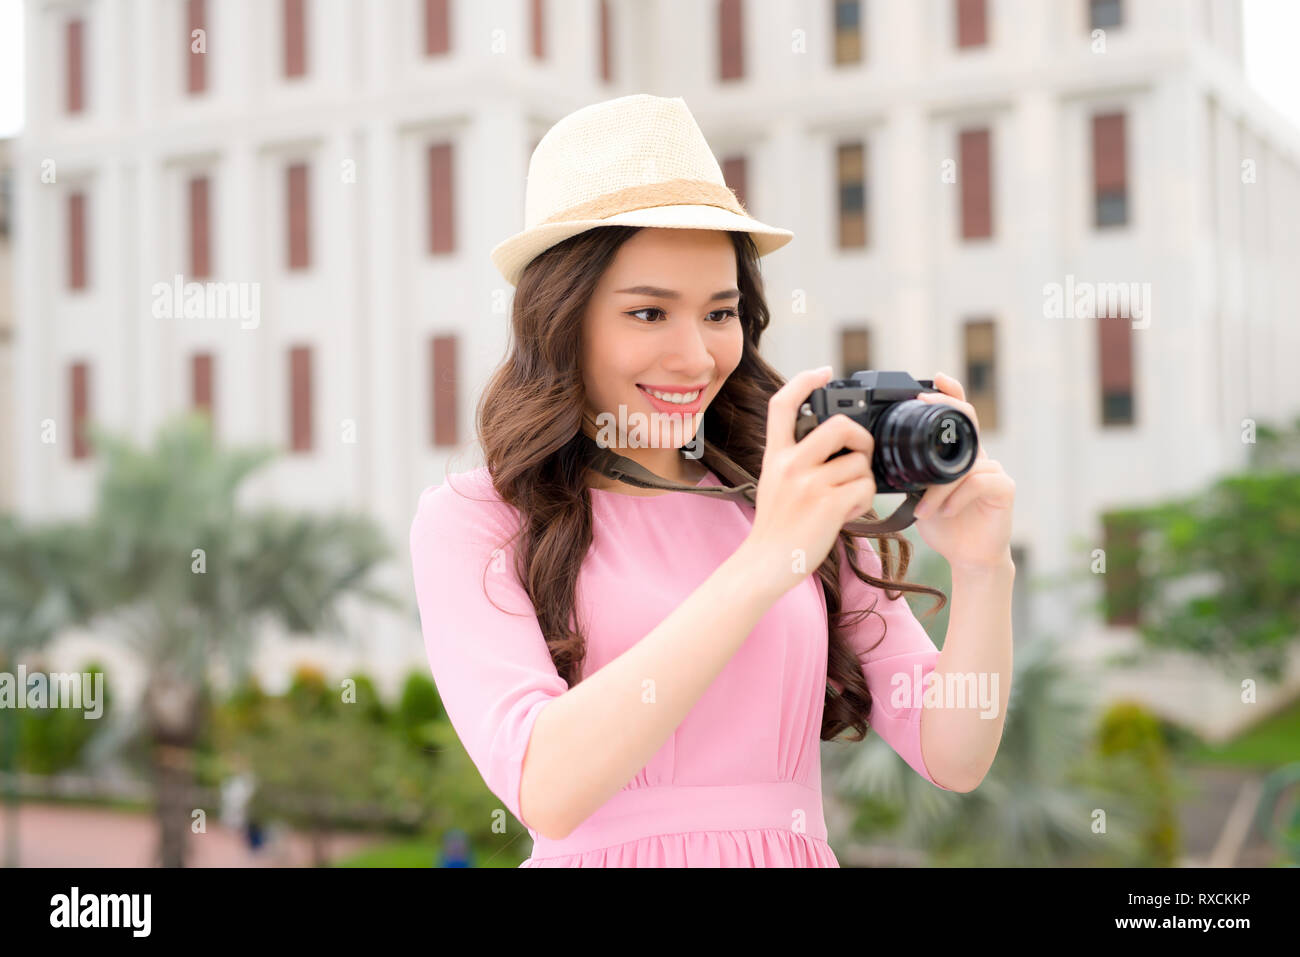 Dehor Estivo sorridente ritratto di uno stile di vita piuttosto giovane donna divertimento in città asiatiche con fotocamera Foto di viaggio del fotografo Foto Stock